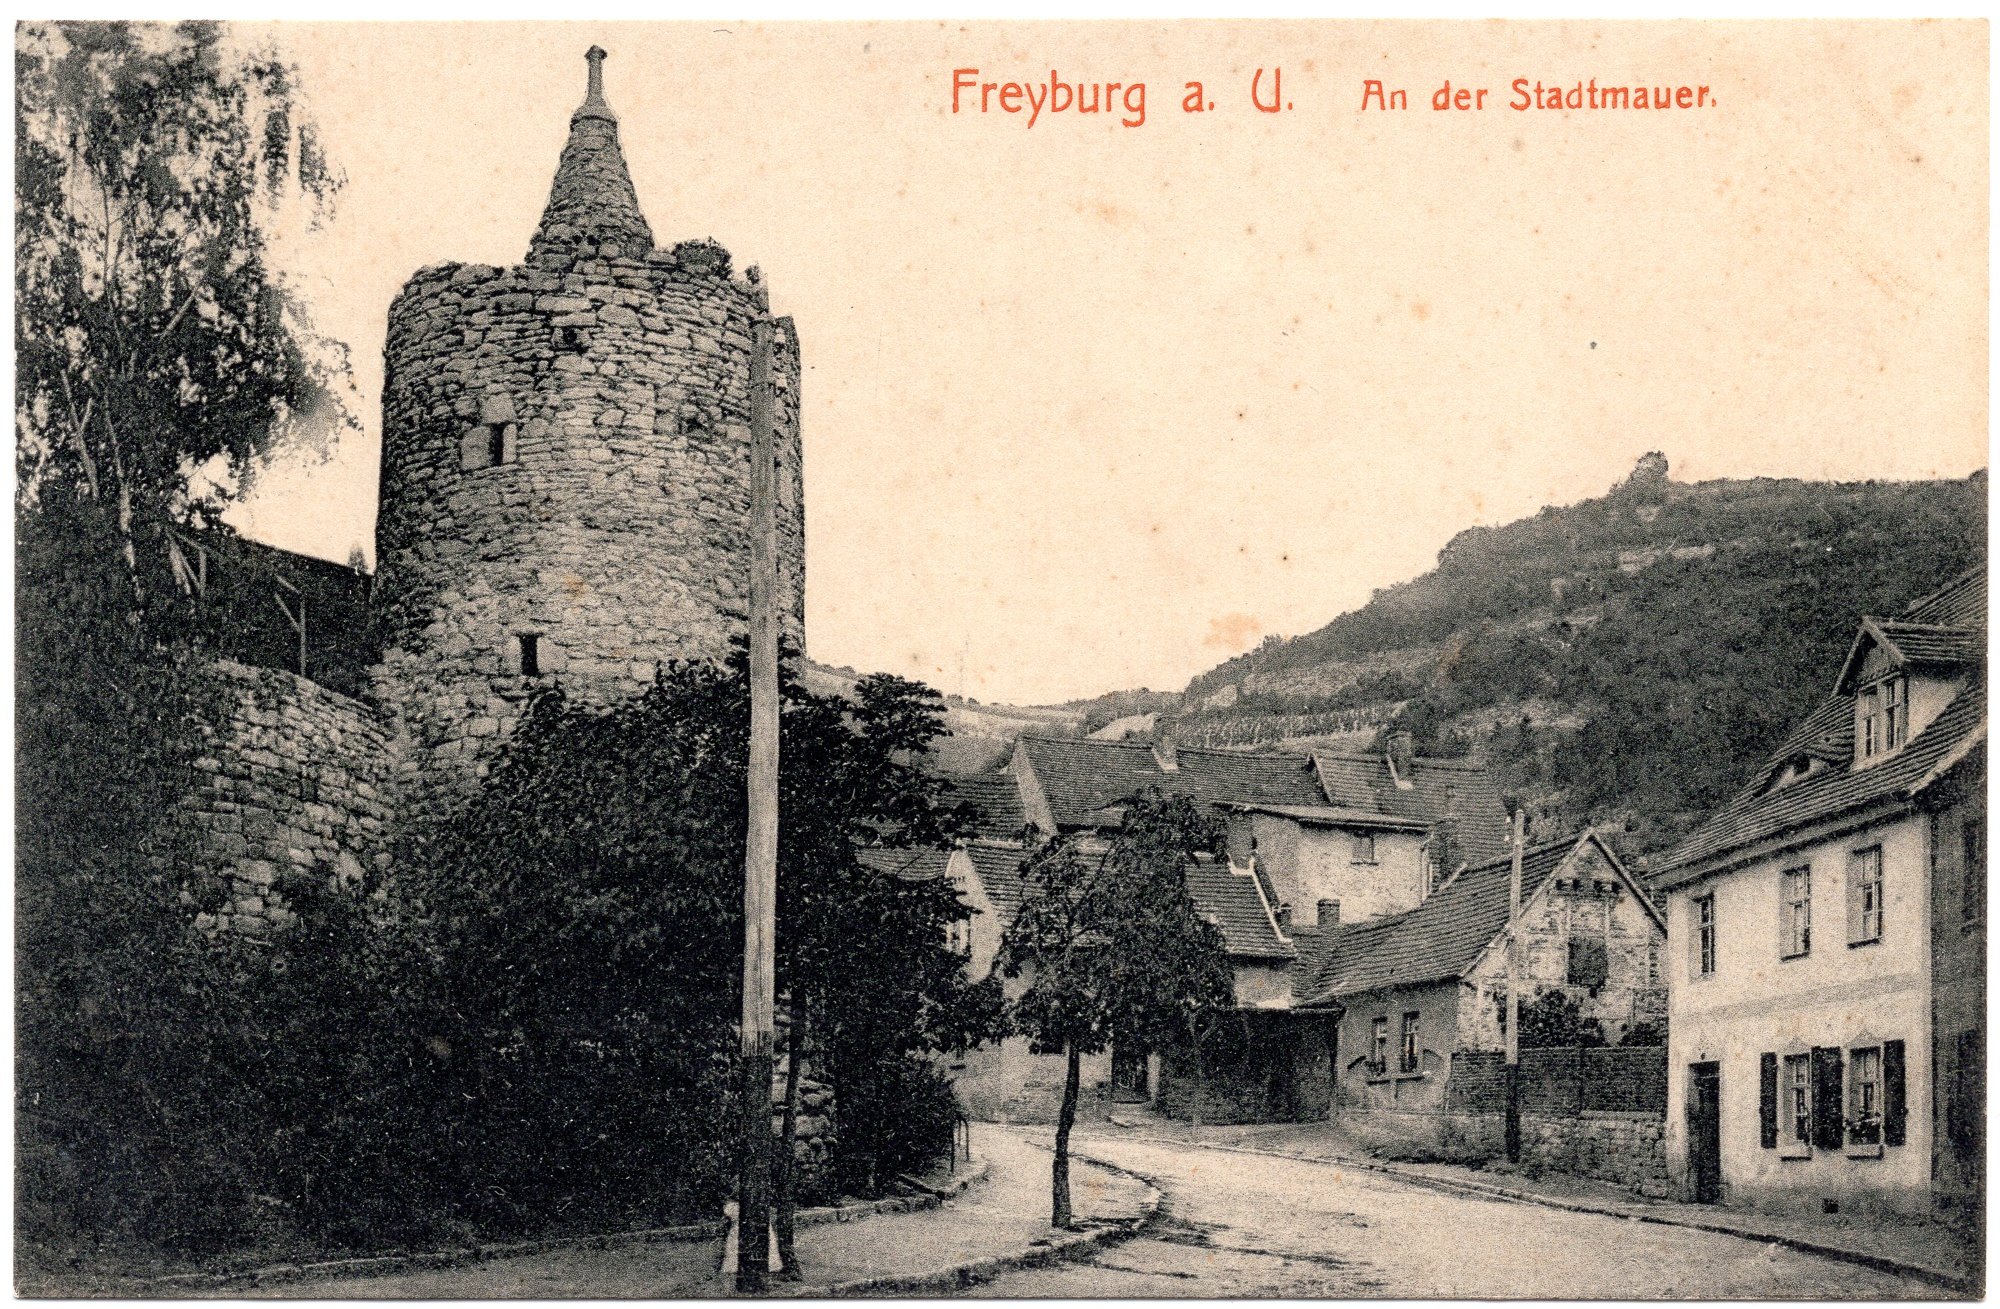 Freyburg a. U. An der Stadtmauer. (Kulturstiftung Sachsen-Anhalt CC BY-NC-SA)